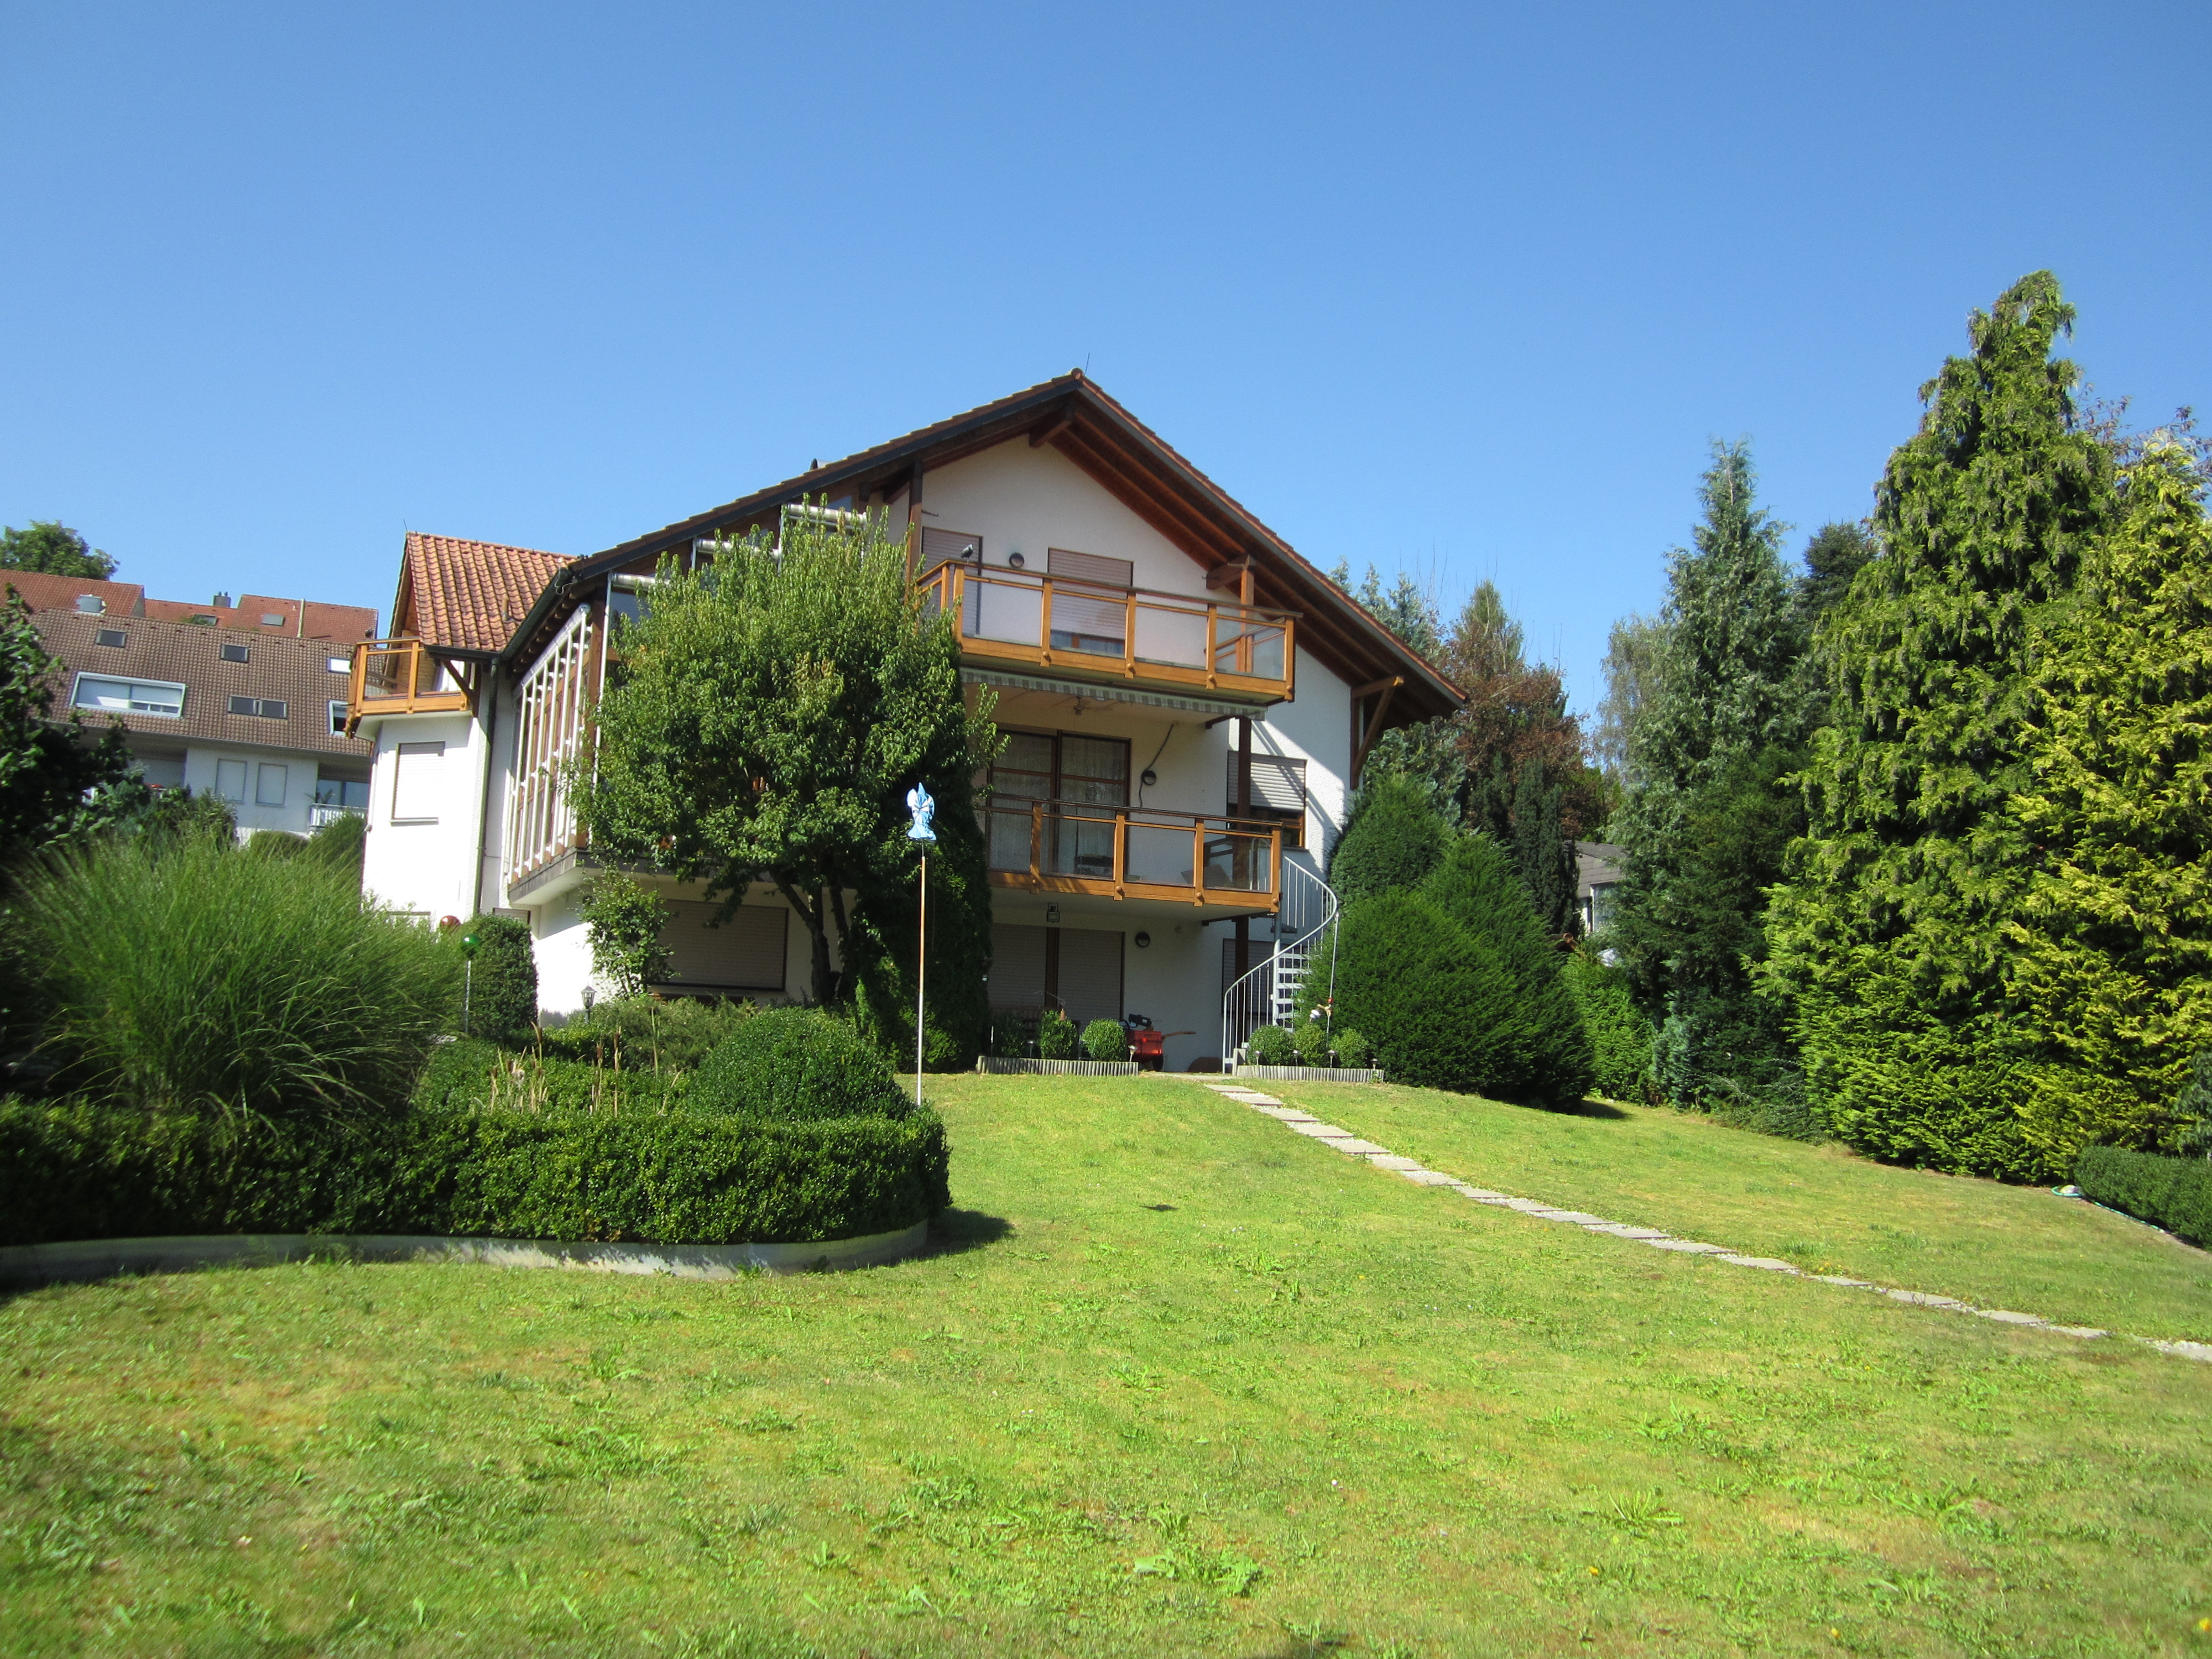 Architektenhaus, Nähe Thermalbad, Bad Saulgau